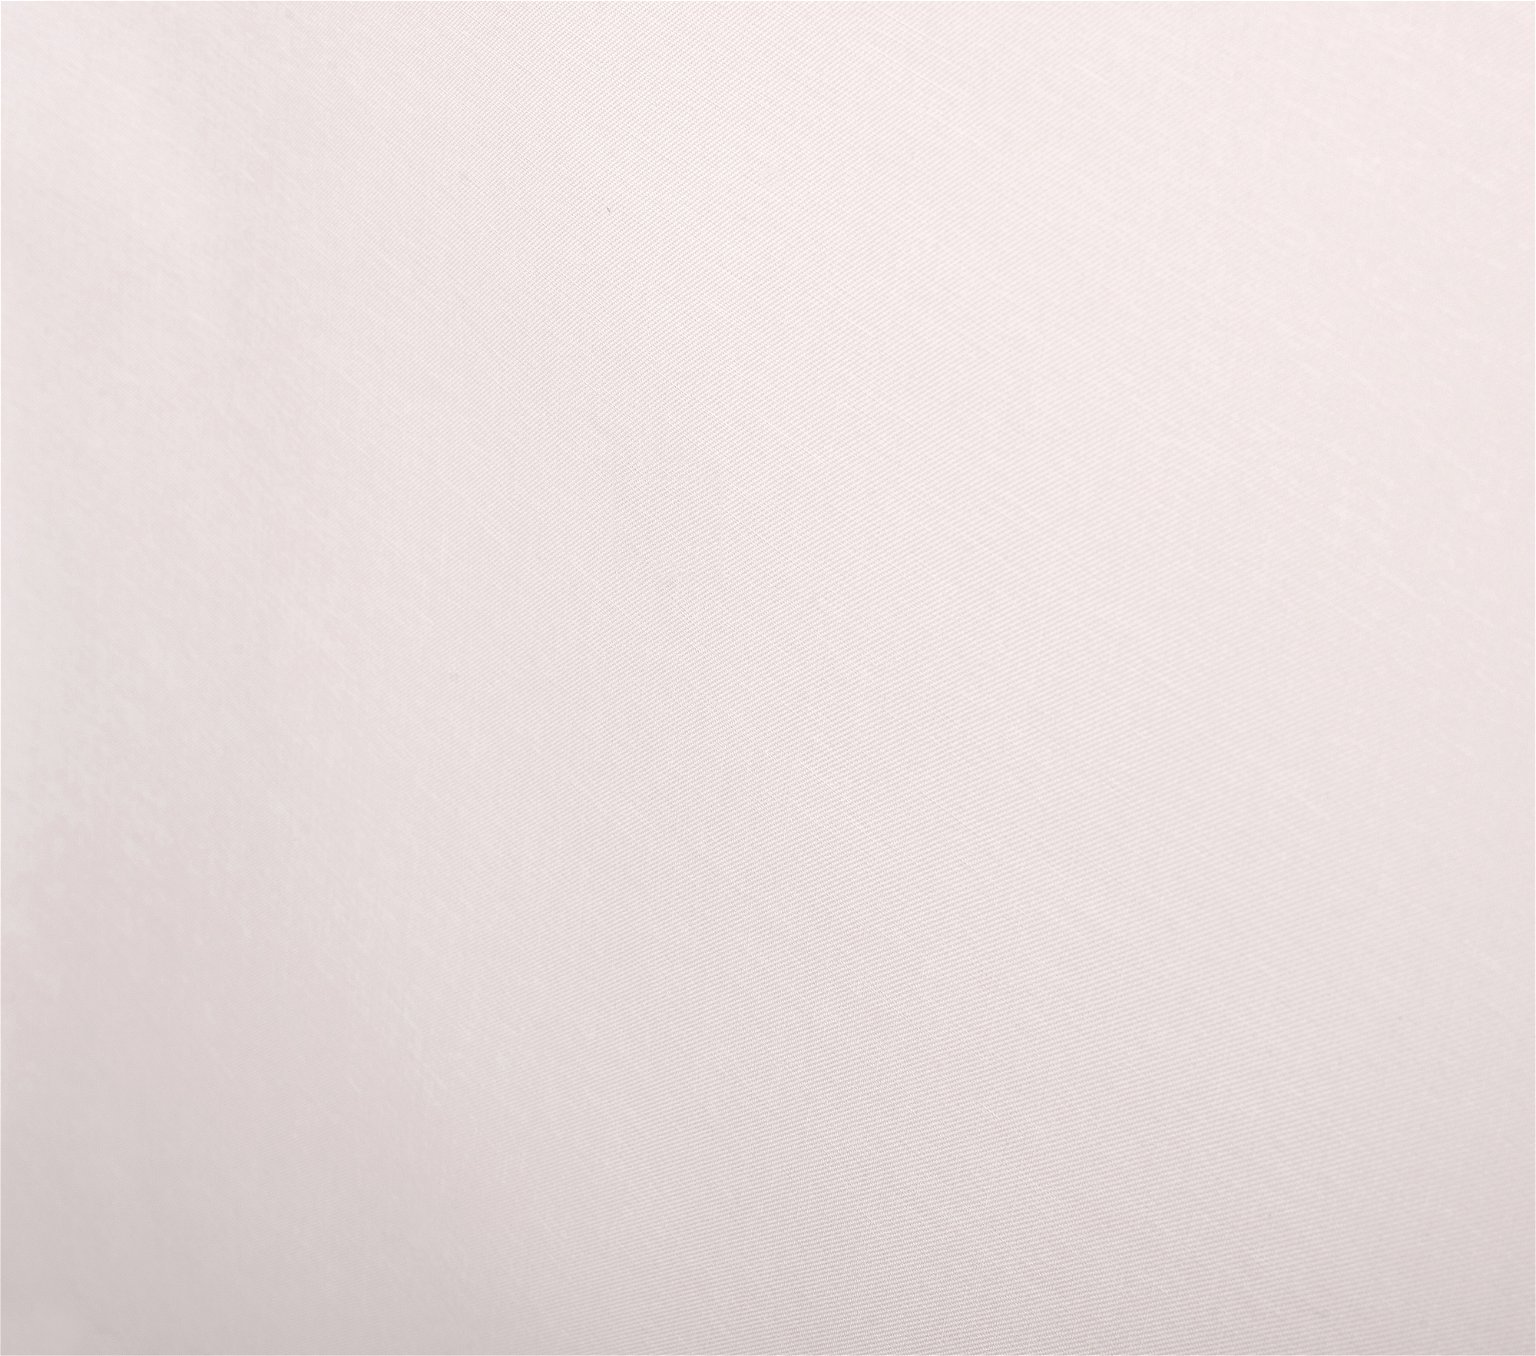 Klasikinė ritininė užuolaida MILAN, kreminės sp., 180 x 170 cm, 100 % poliesteris - 4